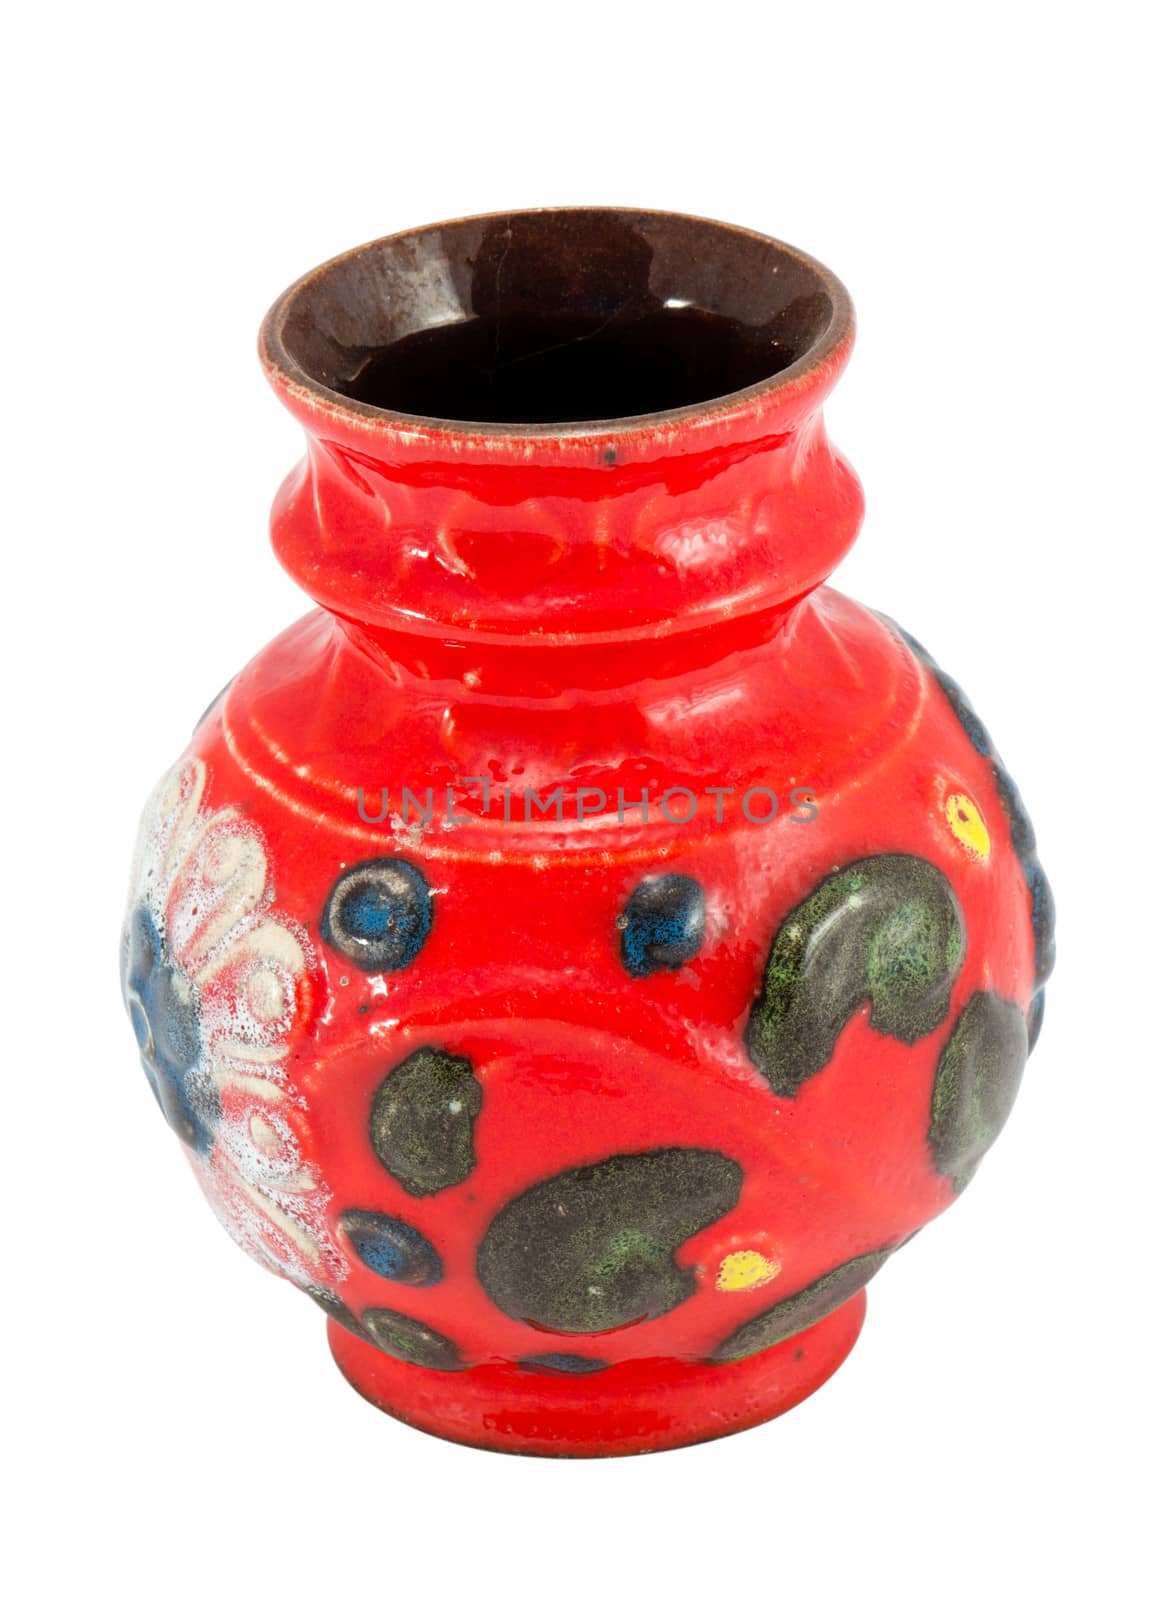 handmade colorful crockery clay ceramic vase isolated on white background.